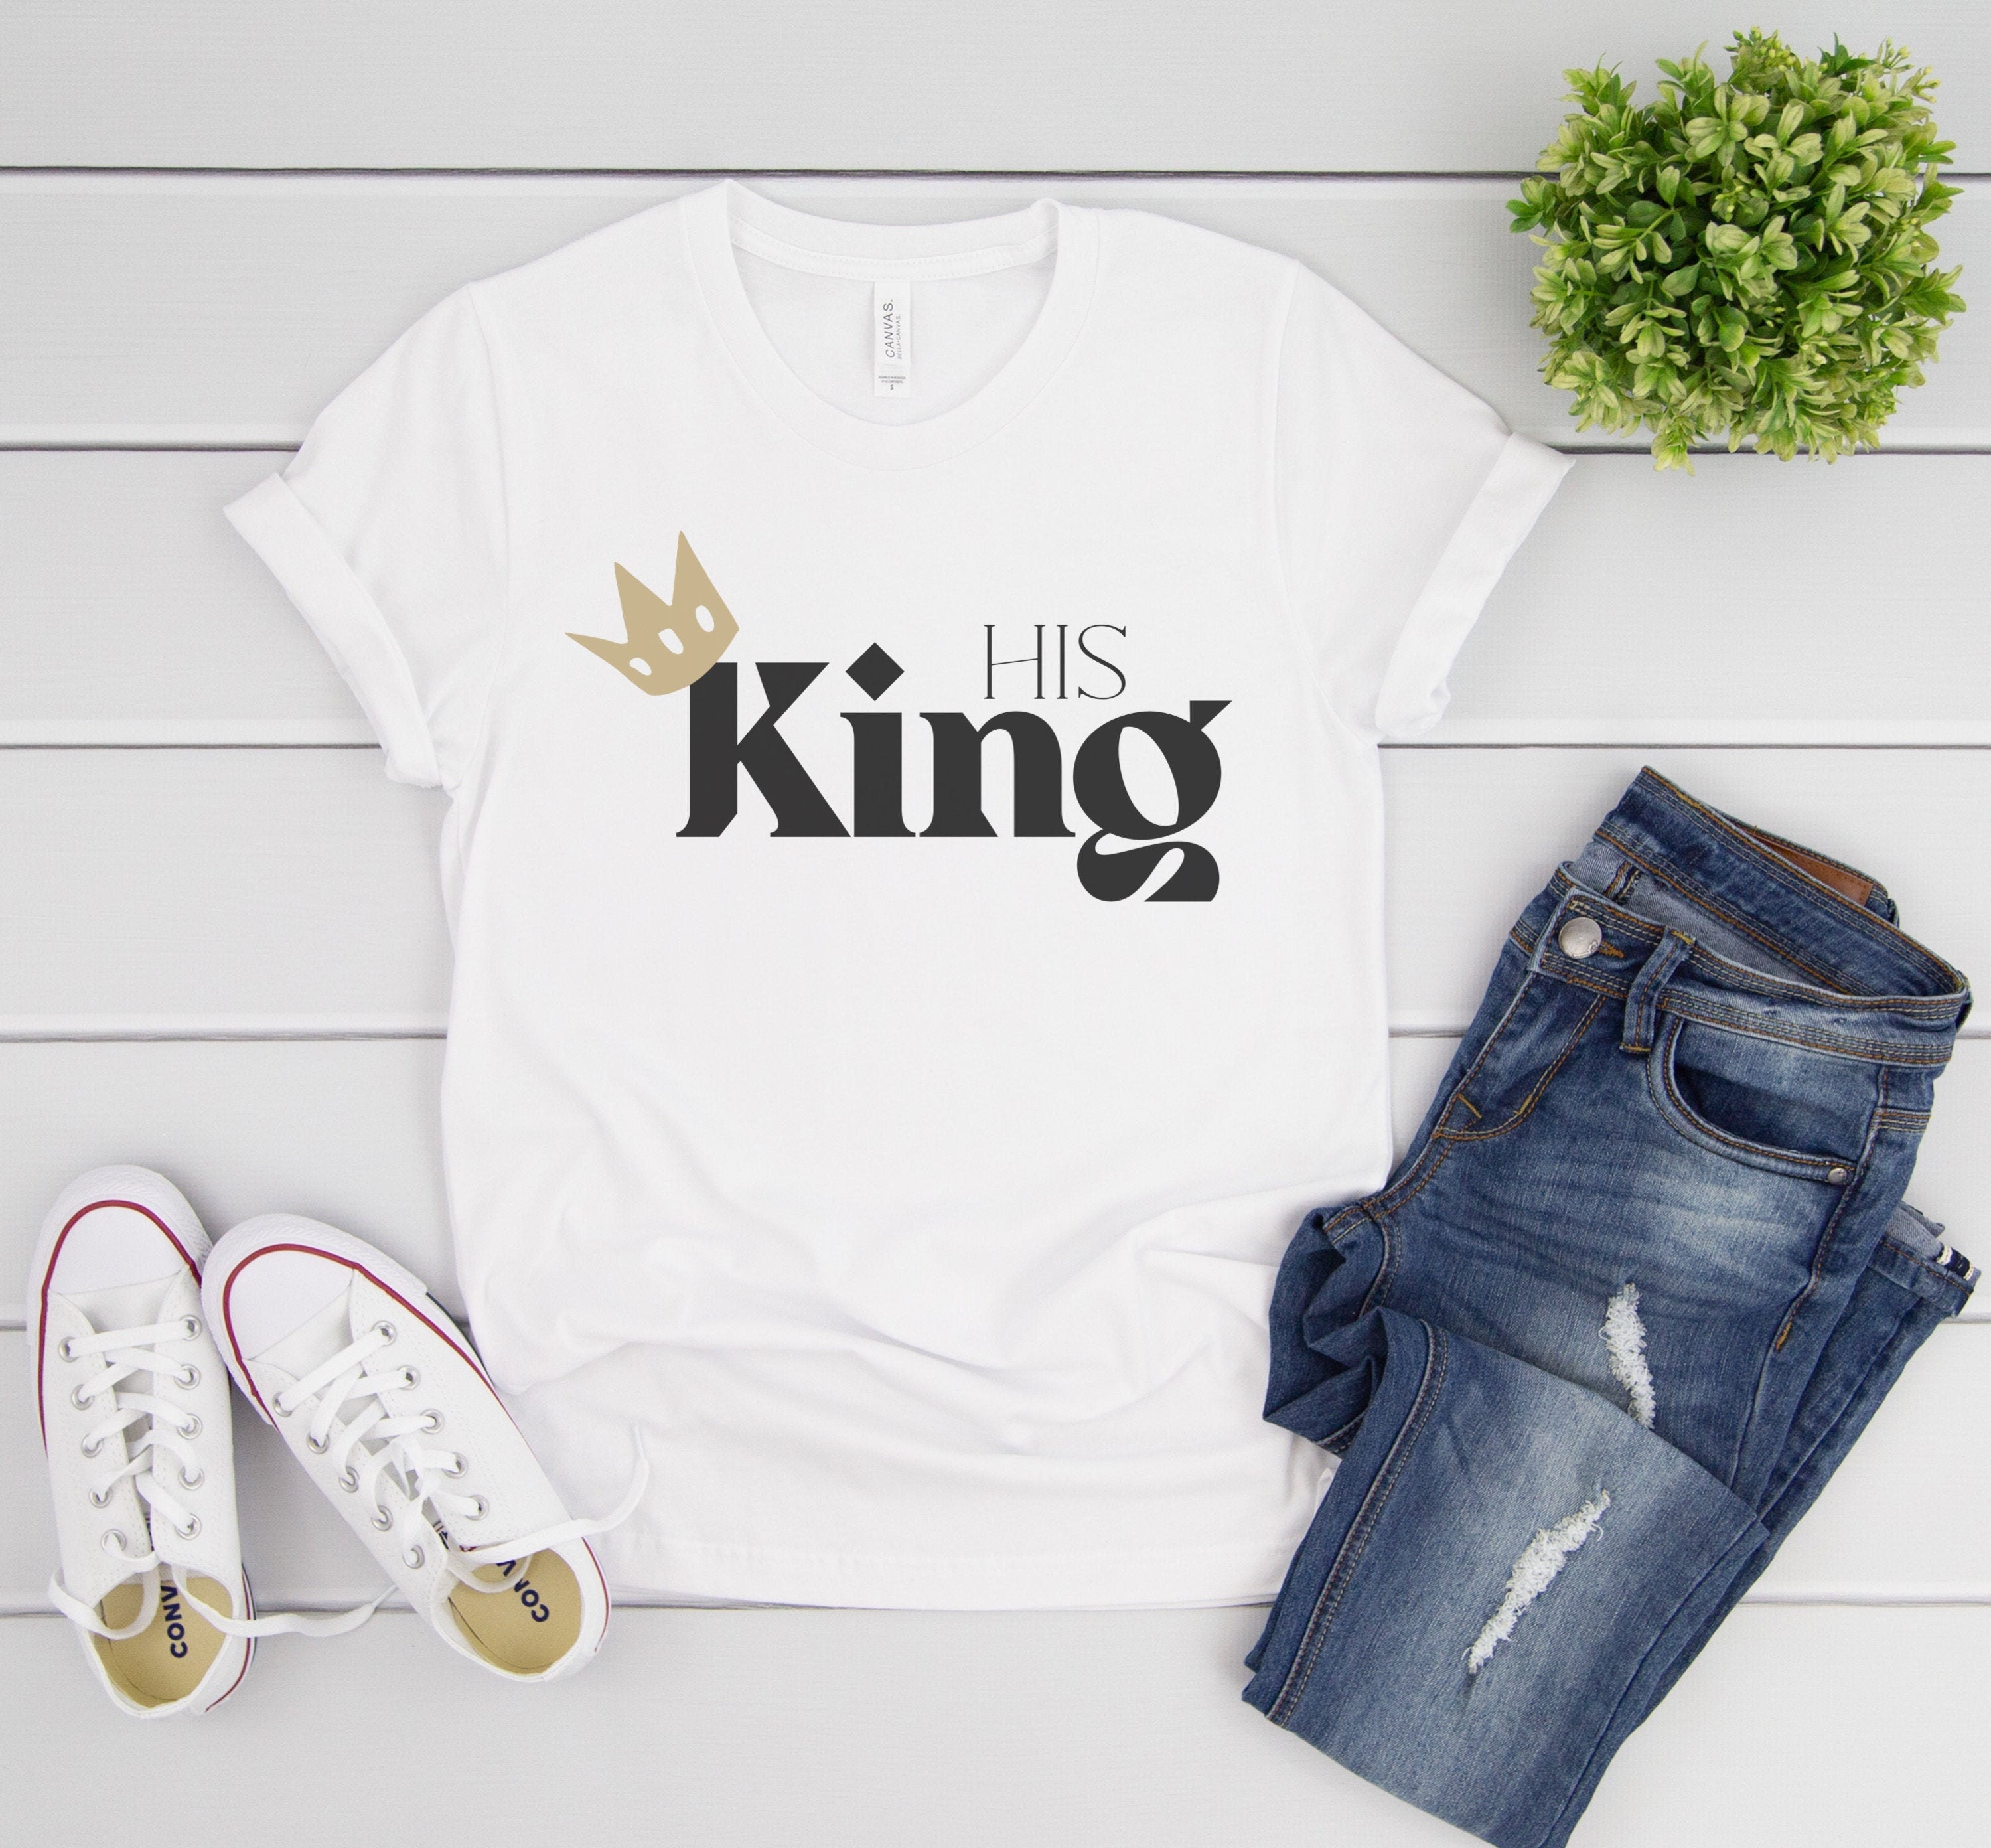 His King Shirts His and His King T Shirts LGTBQ Shirts | Etsy